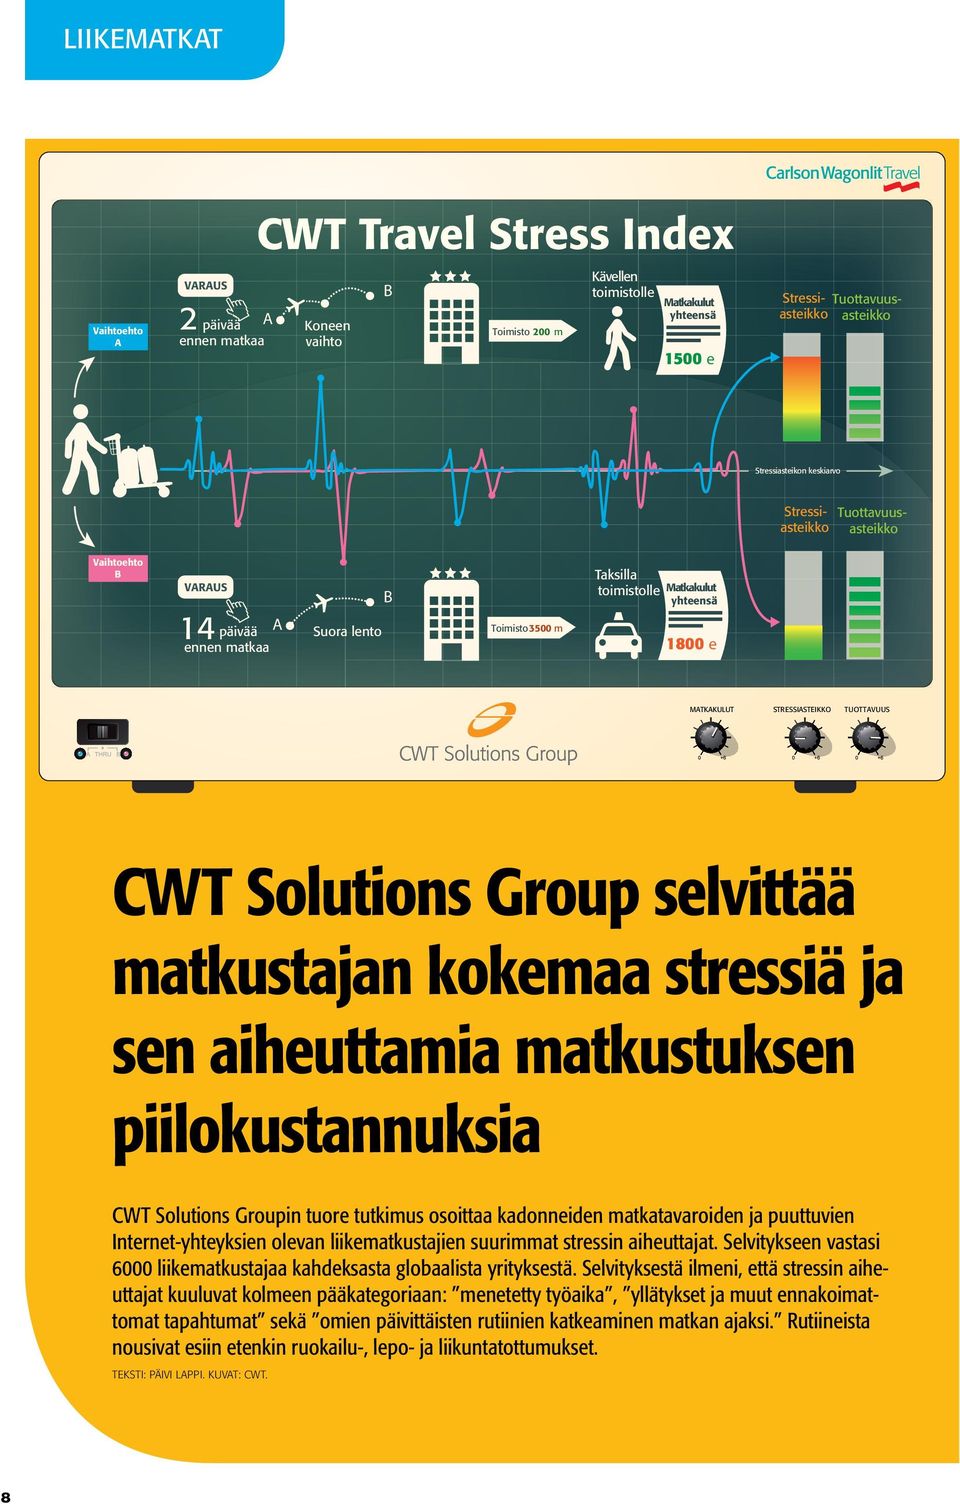 STRESSIASTEIKKO TUOTTAVUUS CWT Solutions Group selvittää matkustajan kokemaa stressiä ja sen aiheuttamia matkustuksen piilokustannuksia CWT Solutions Groupin tuore tutkimus osoittaa kadonneiden